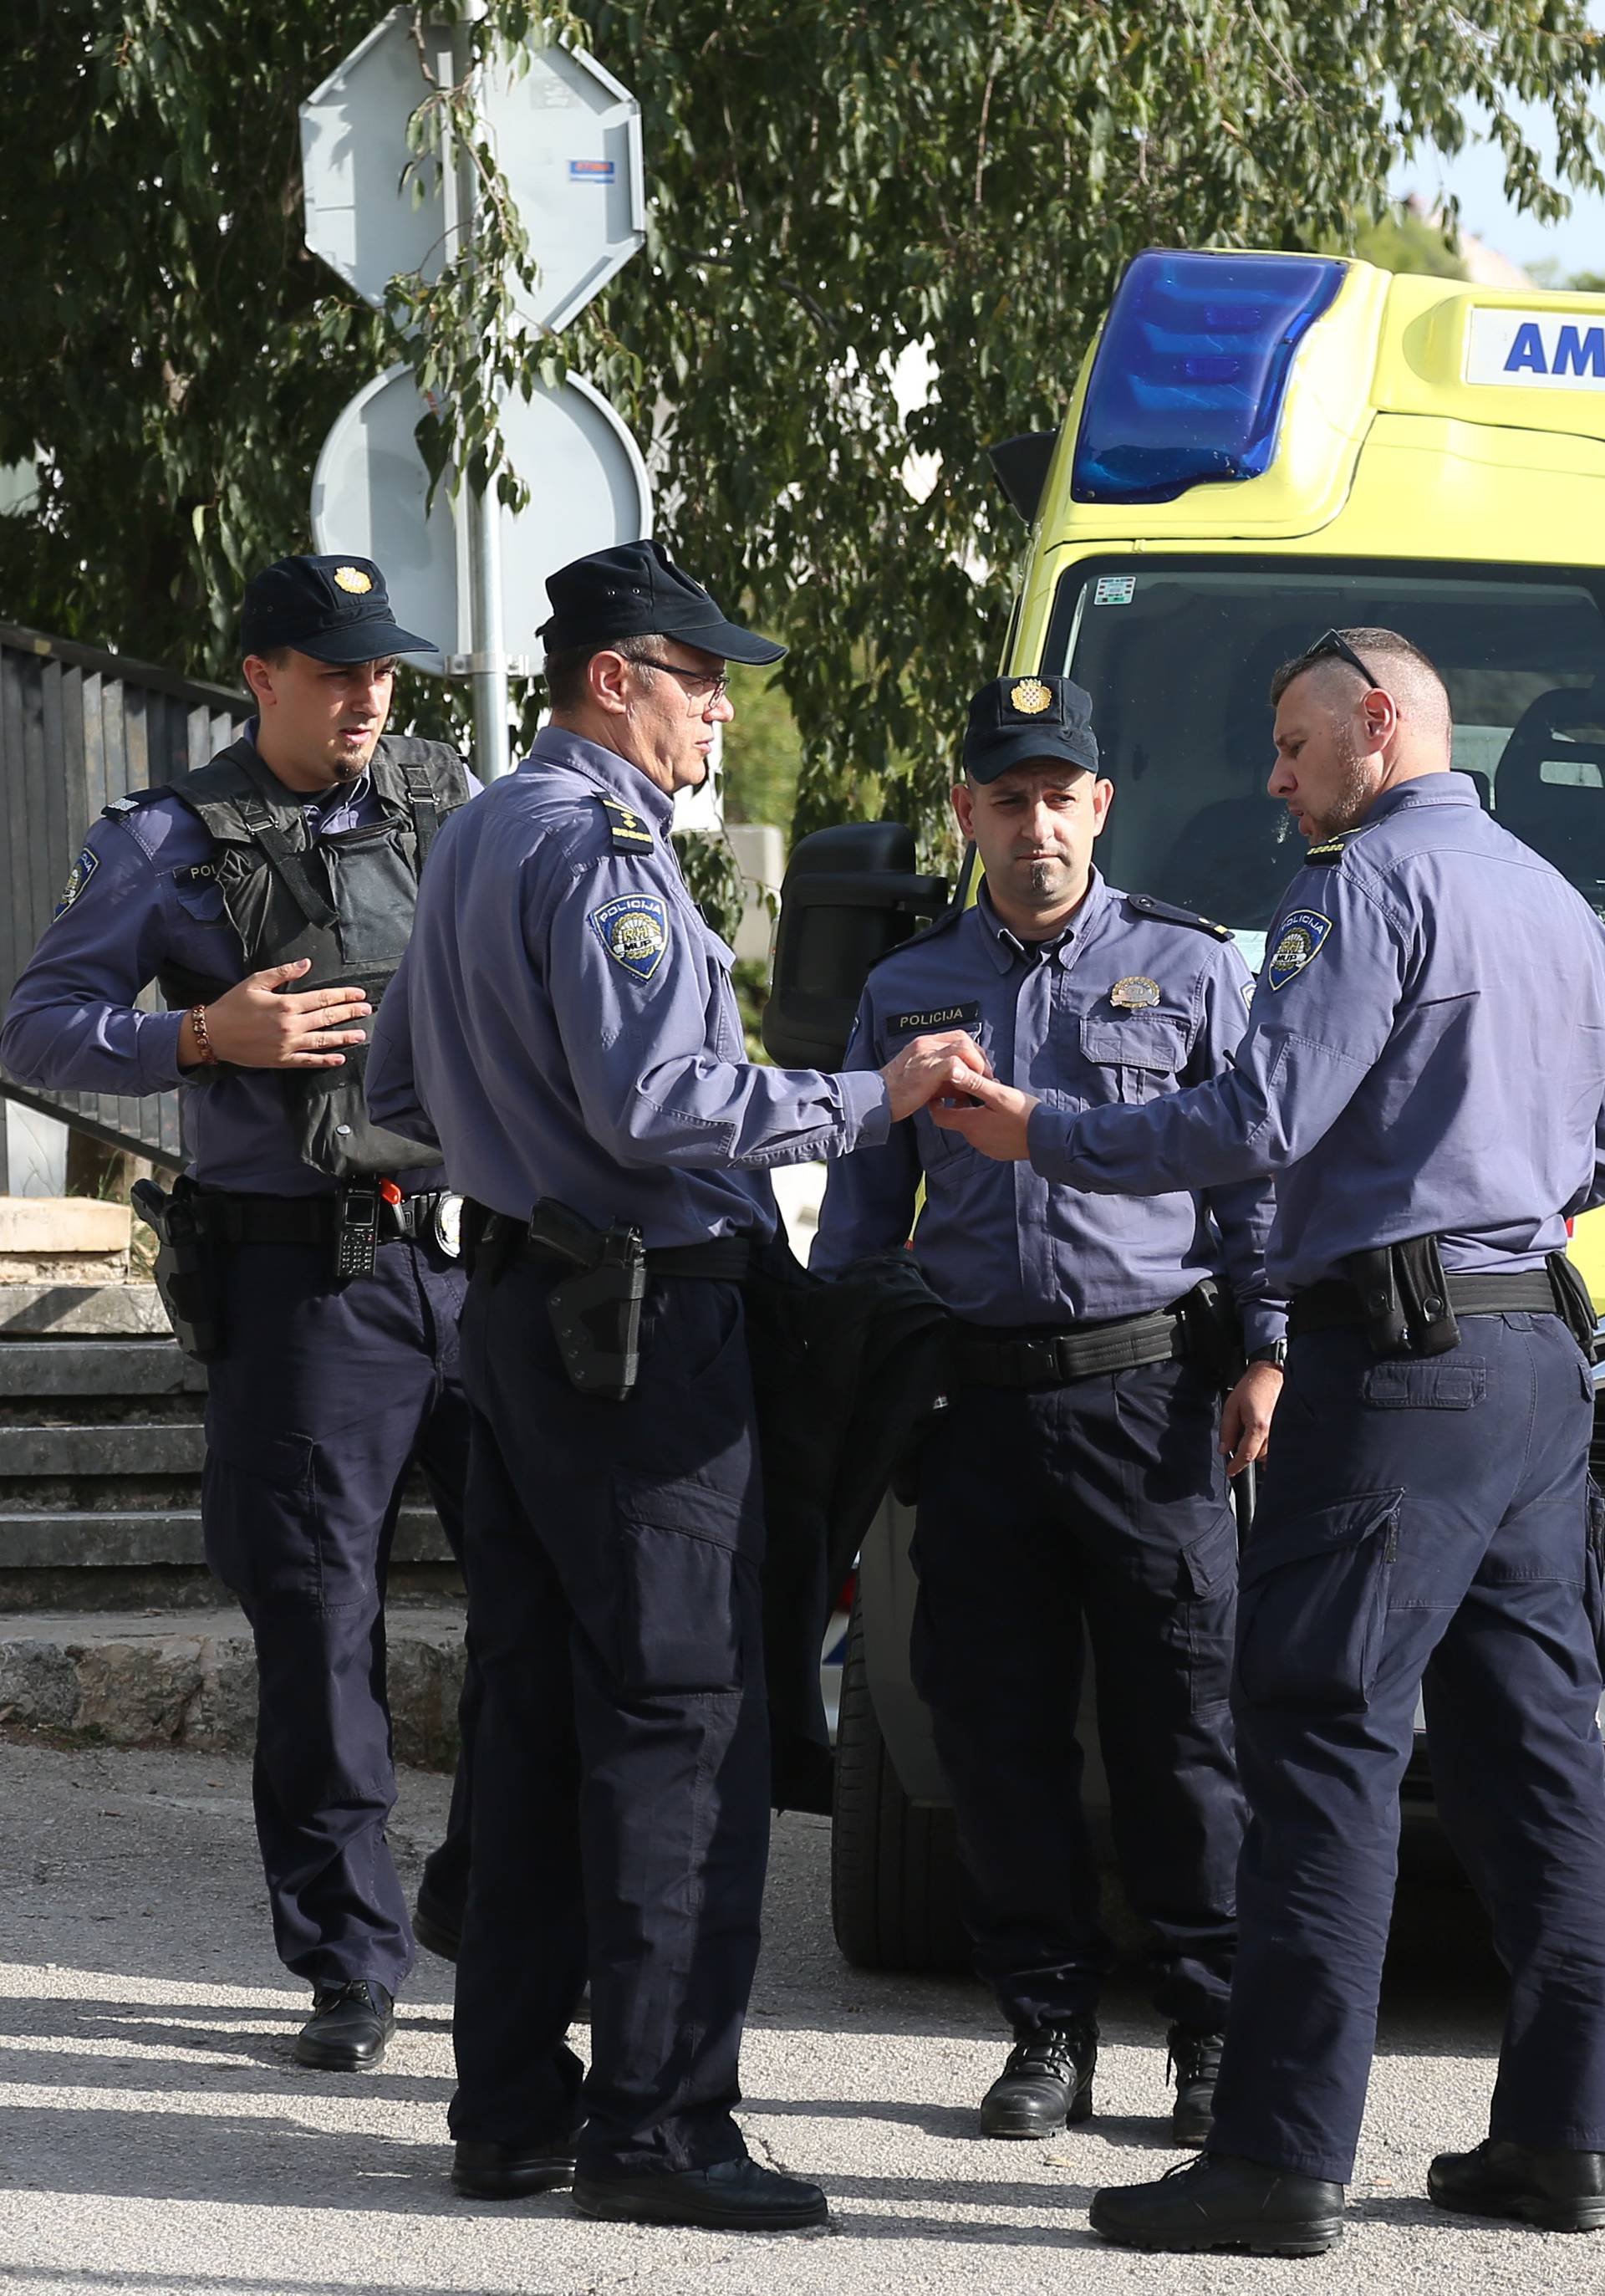 Okončana drama u Šibeniku: Muškarac se predao policiji